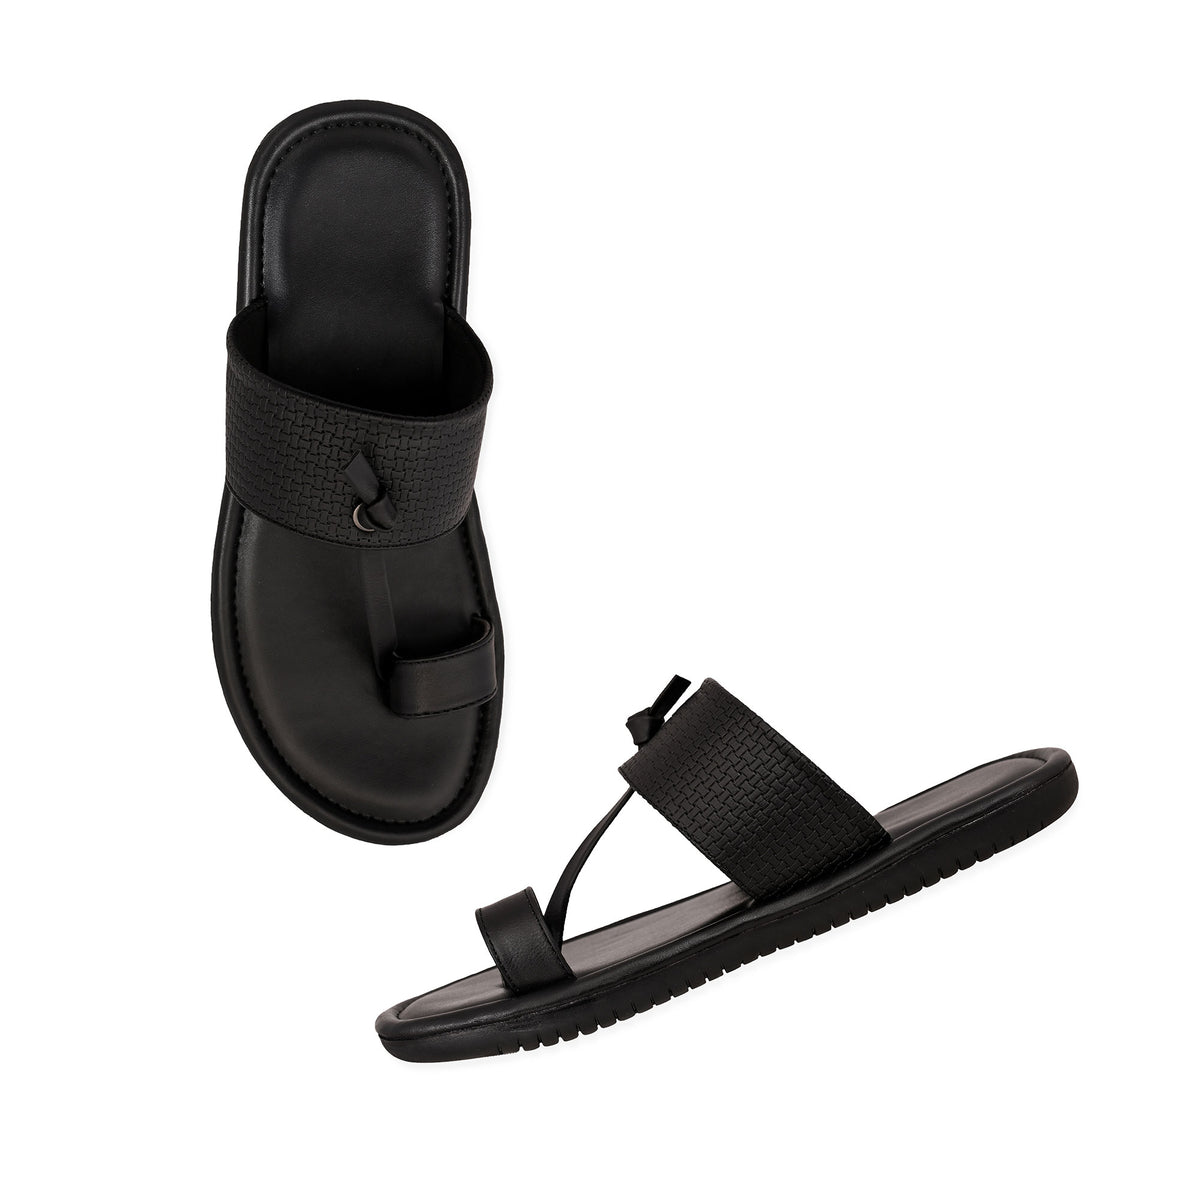 Basic Black Slippers